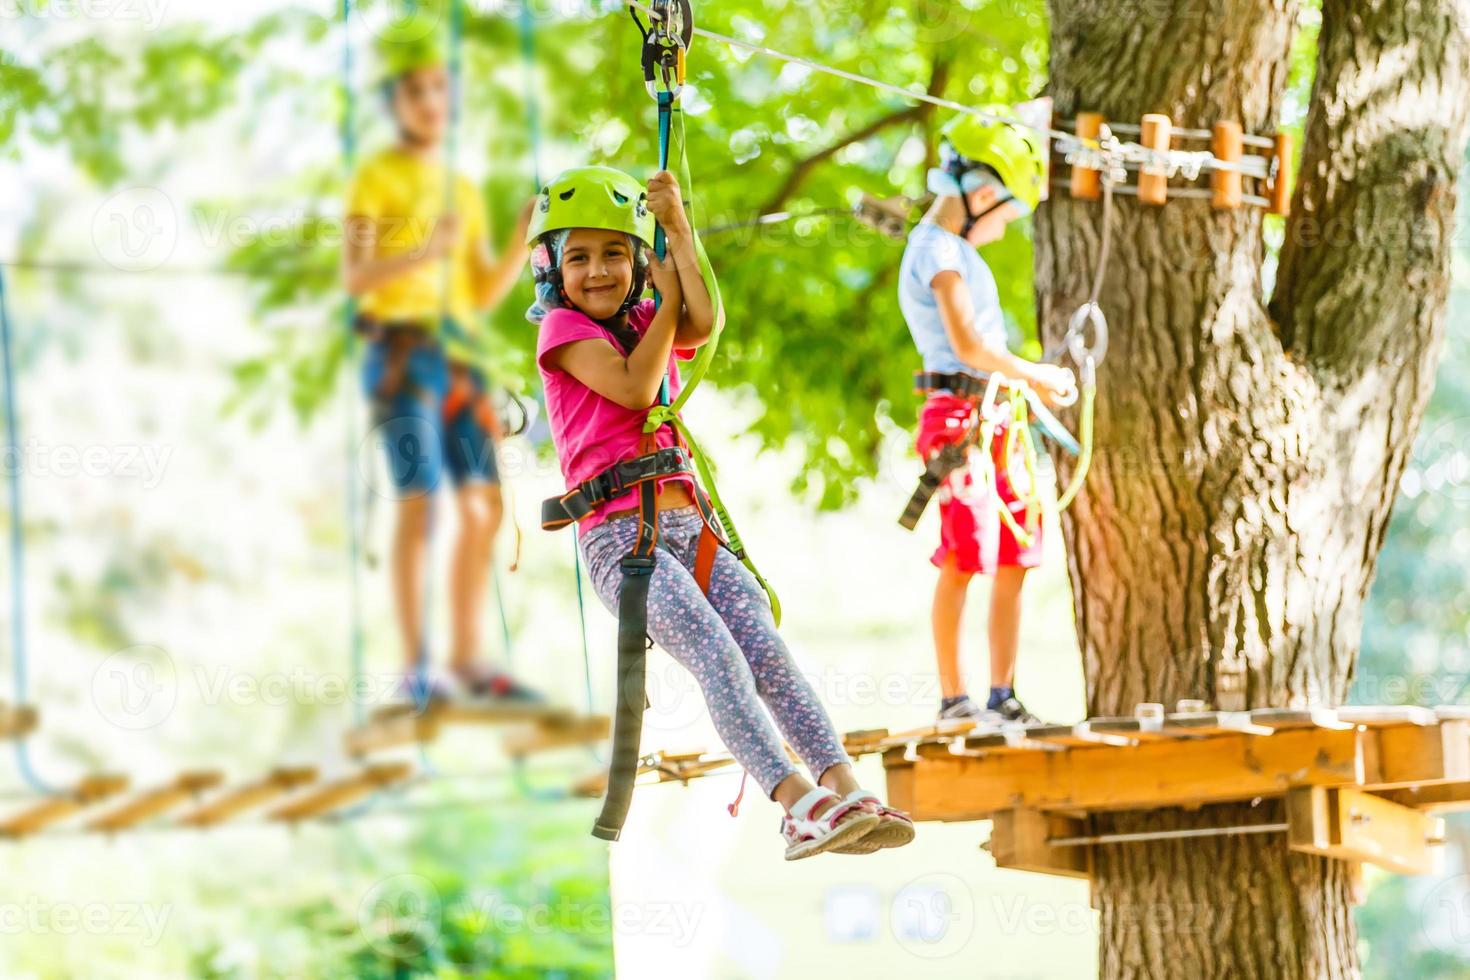 parque de escalada de aventura - parque de corda para crianças no curso de capacete de montanha e equipamento de segurança foto